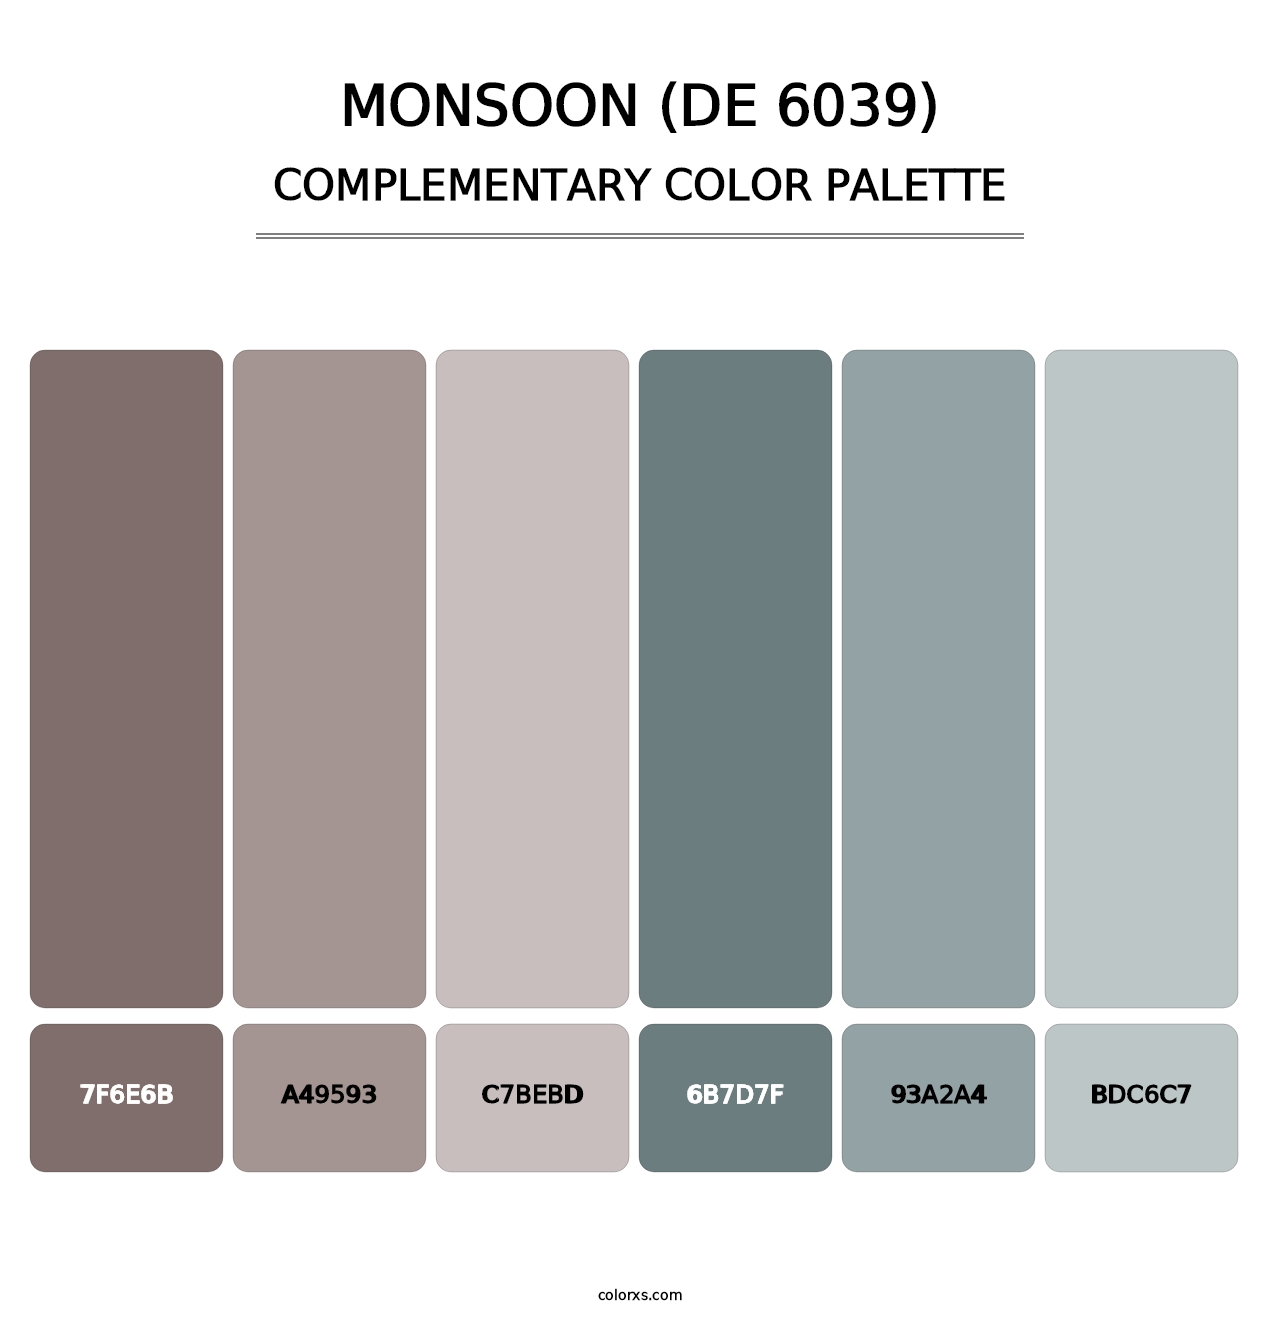 Monsoon (DE 6039) - Complementary Color Palette